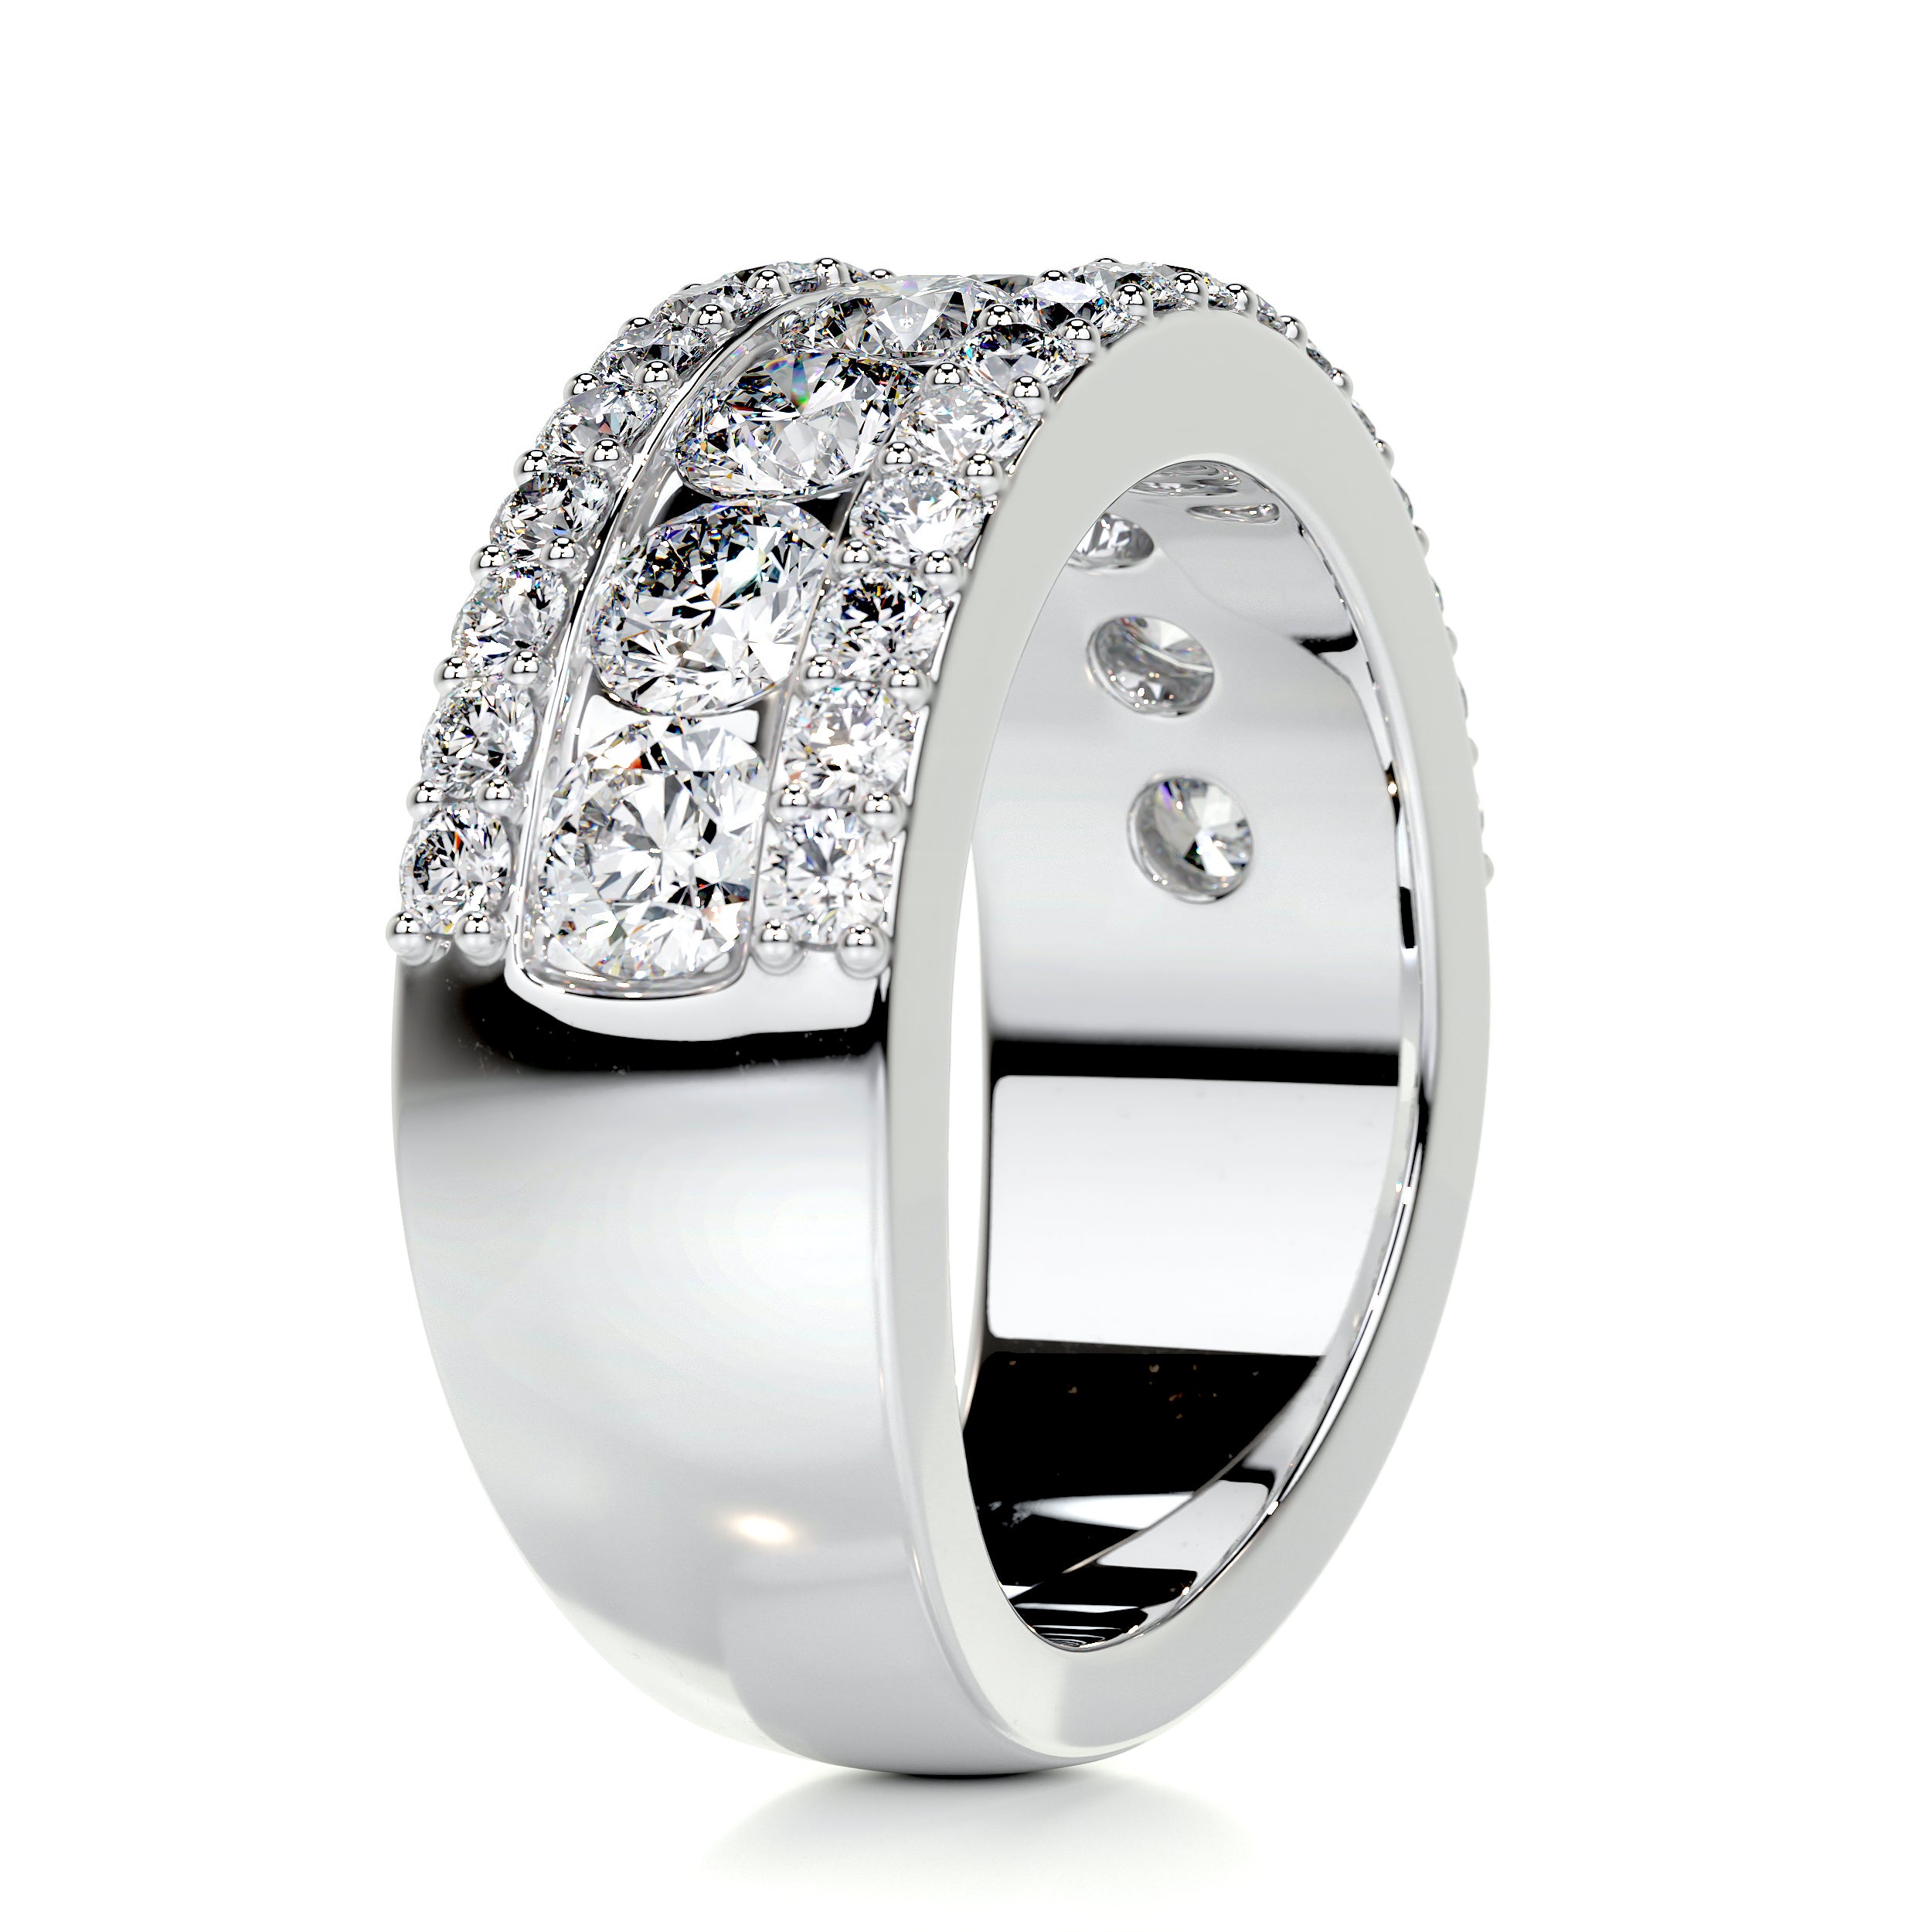 Nia Diamond Wedding Ring   (2 Carat) -14K White Gold